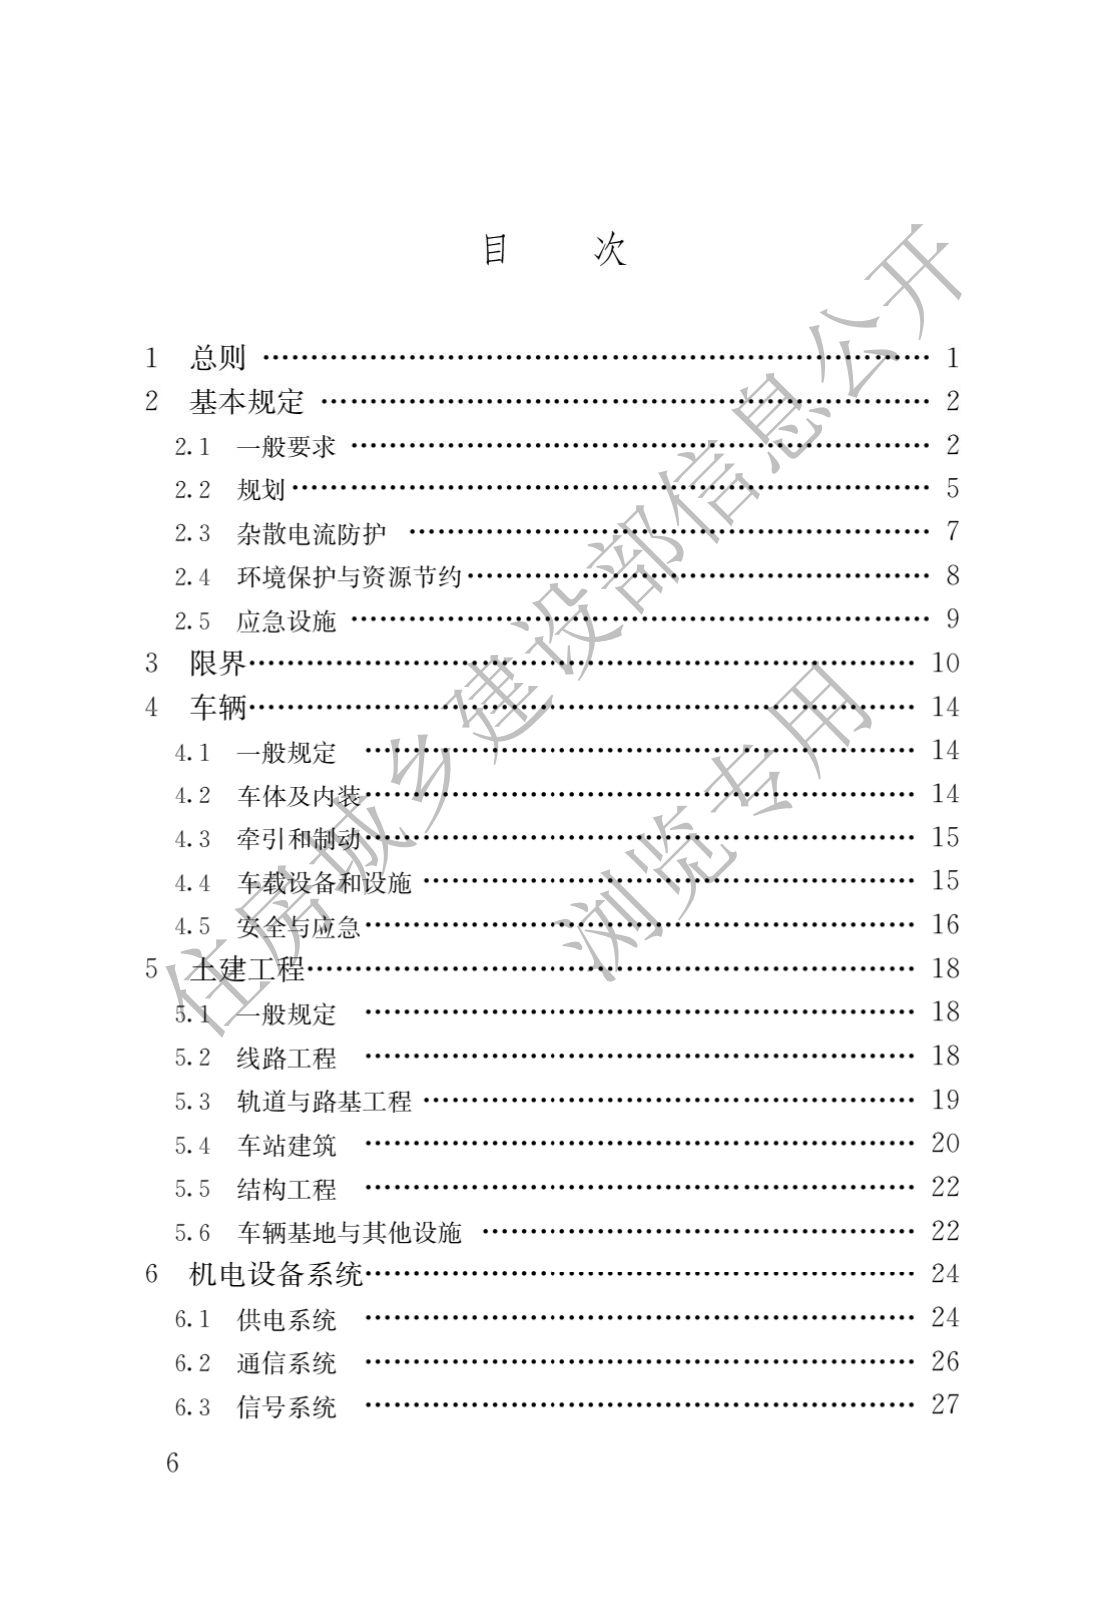 住房和城鄉建設部關于發布國家标準 《城市軌道交通工(gōng)程項目規範》的公告(圖3)